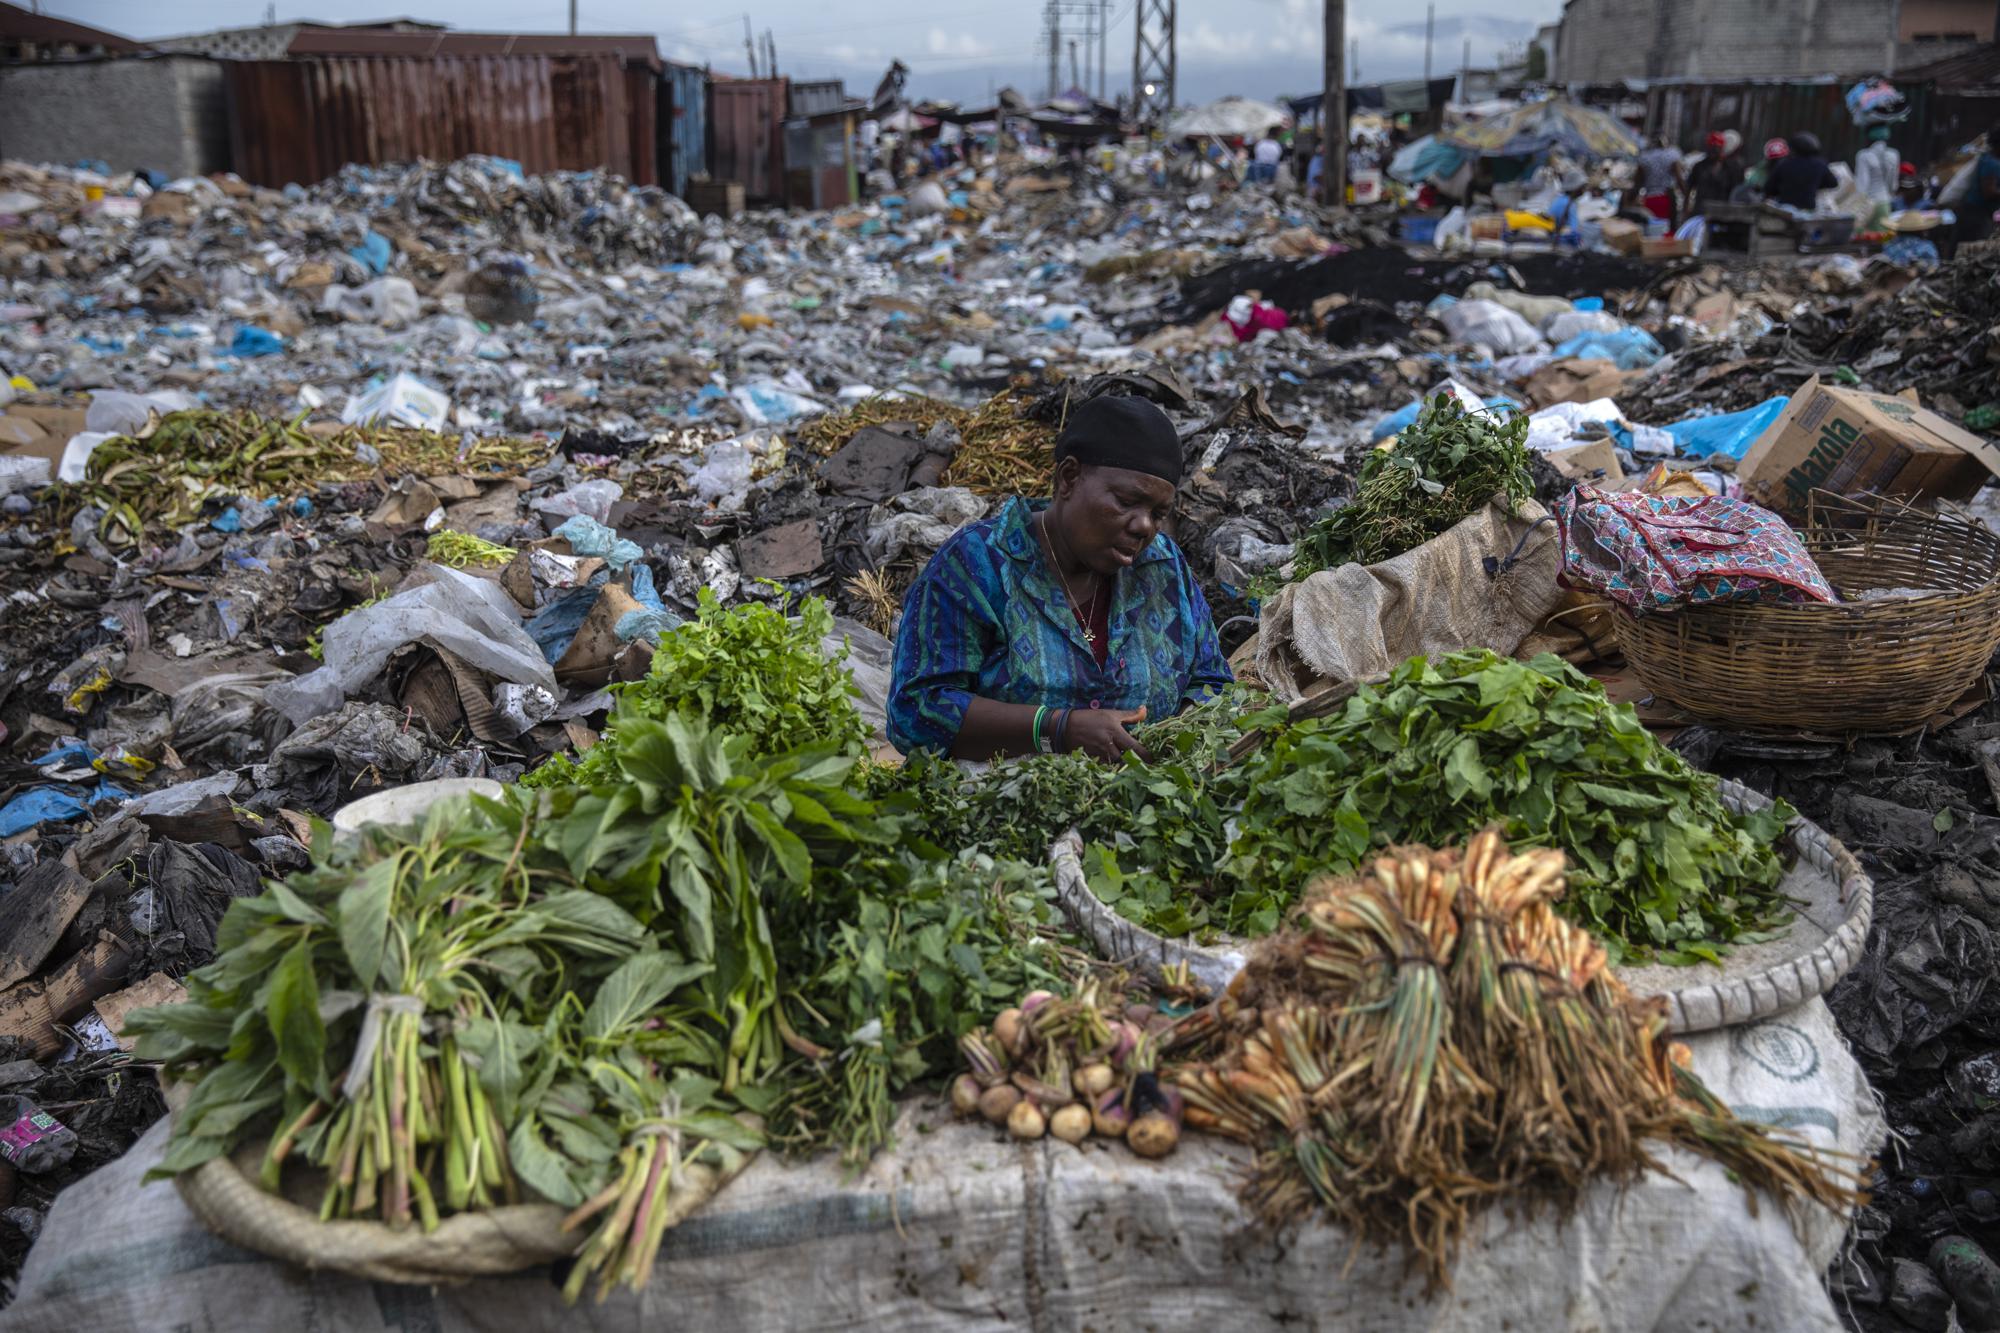 Một người phụ nữ bán rau xanh trong chợ Croix des Bosalles ở Port-au-Prince, Haiti, ngày 22/9/2021. Nền chợ dày đặc rác phân hủy, và ở một số nơi có những đám cháy nhỏ do đốt rác